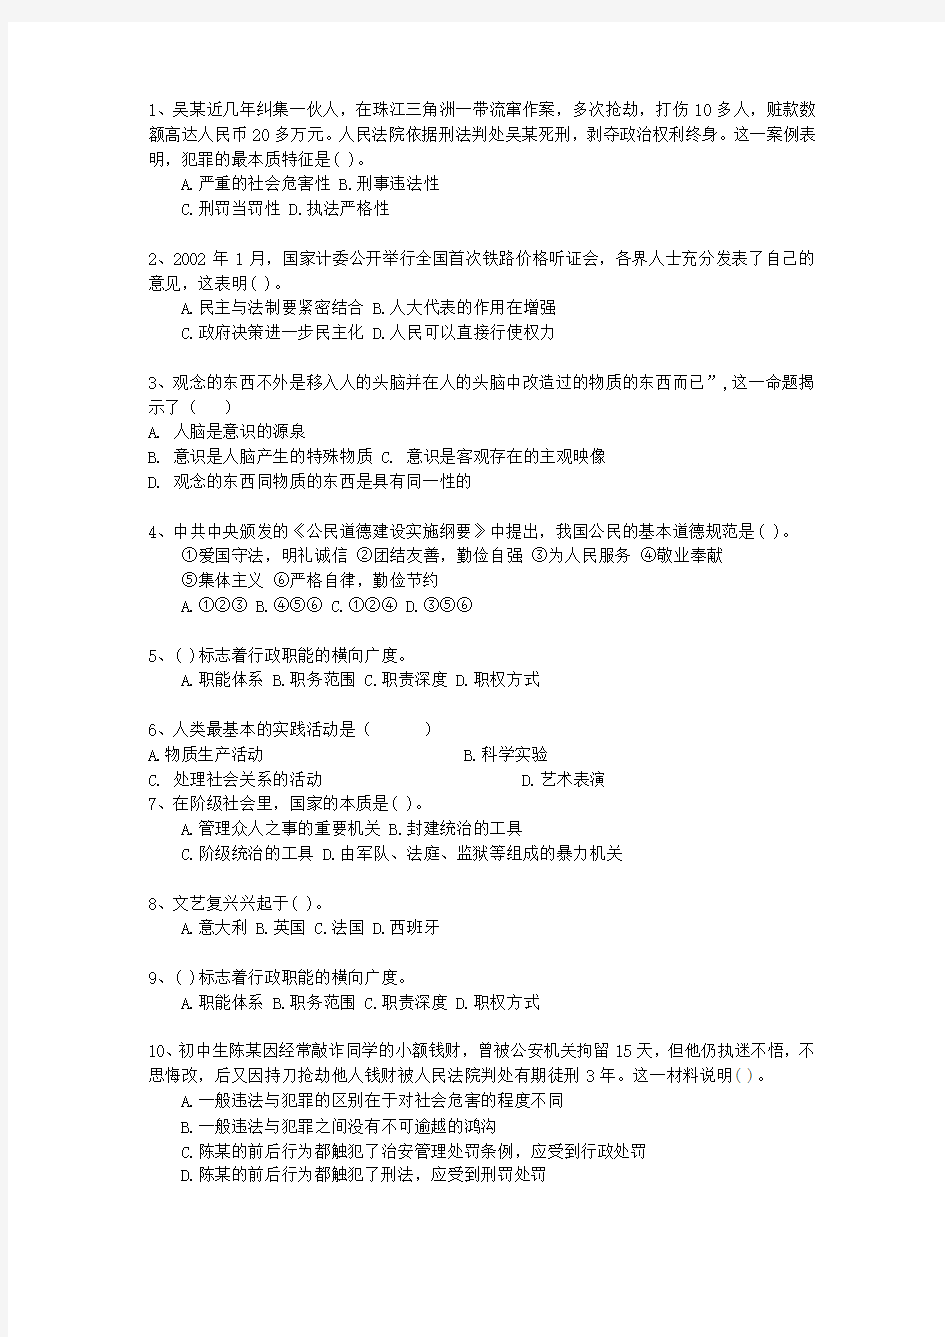 2013广西壮族自治区教师招聘考试公共基础知识一点通科目一